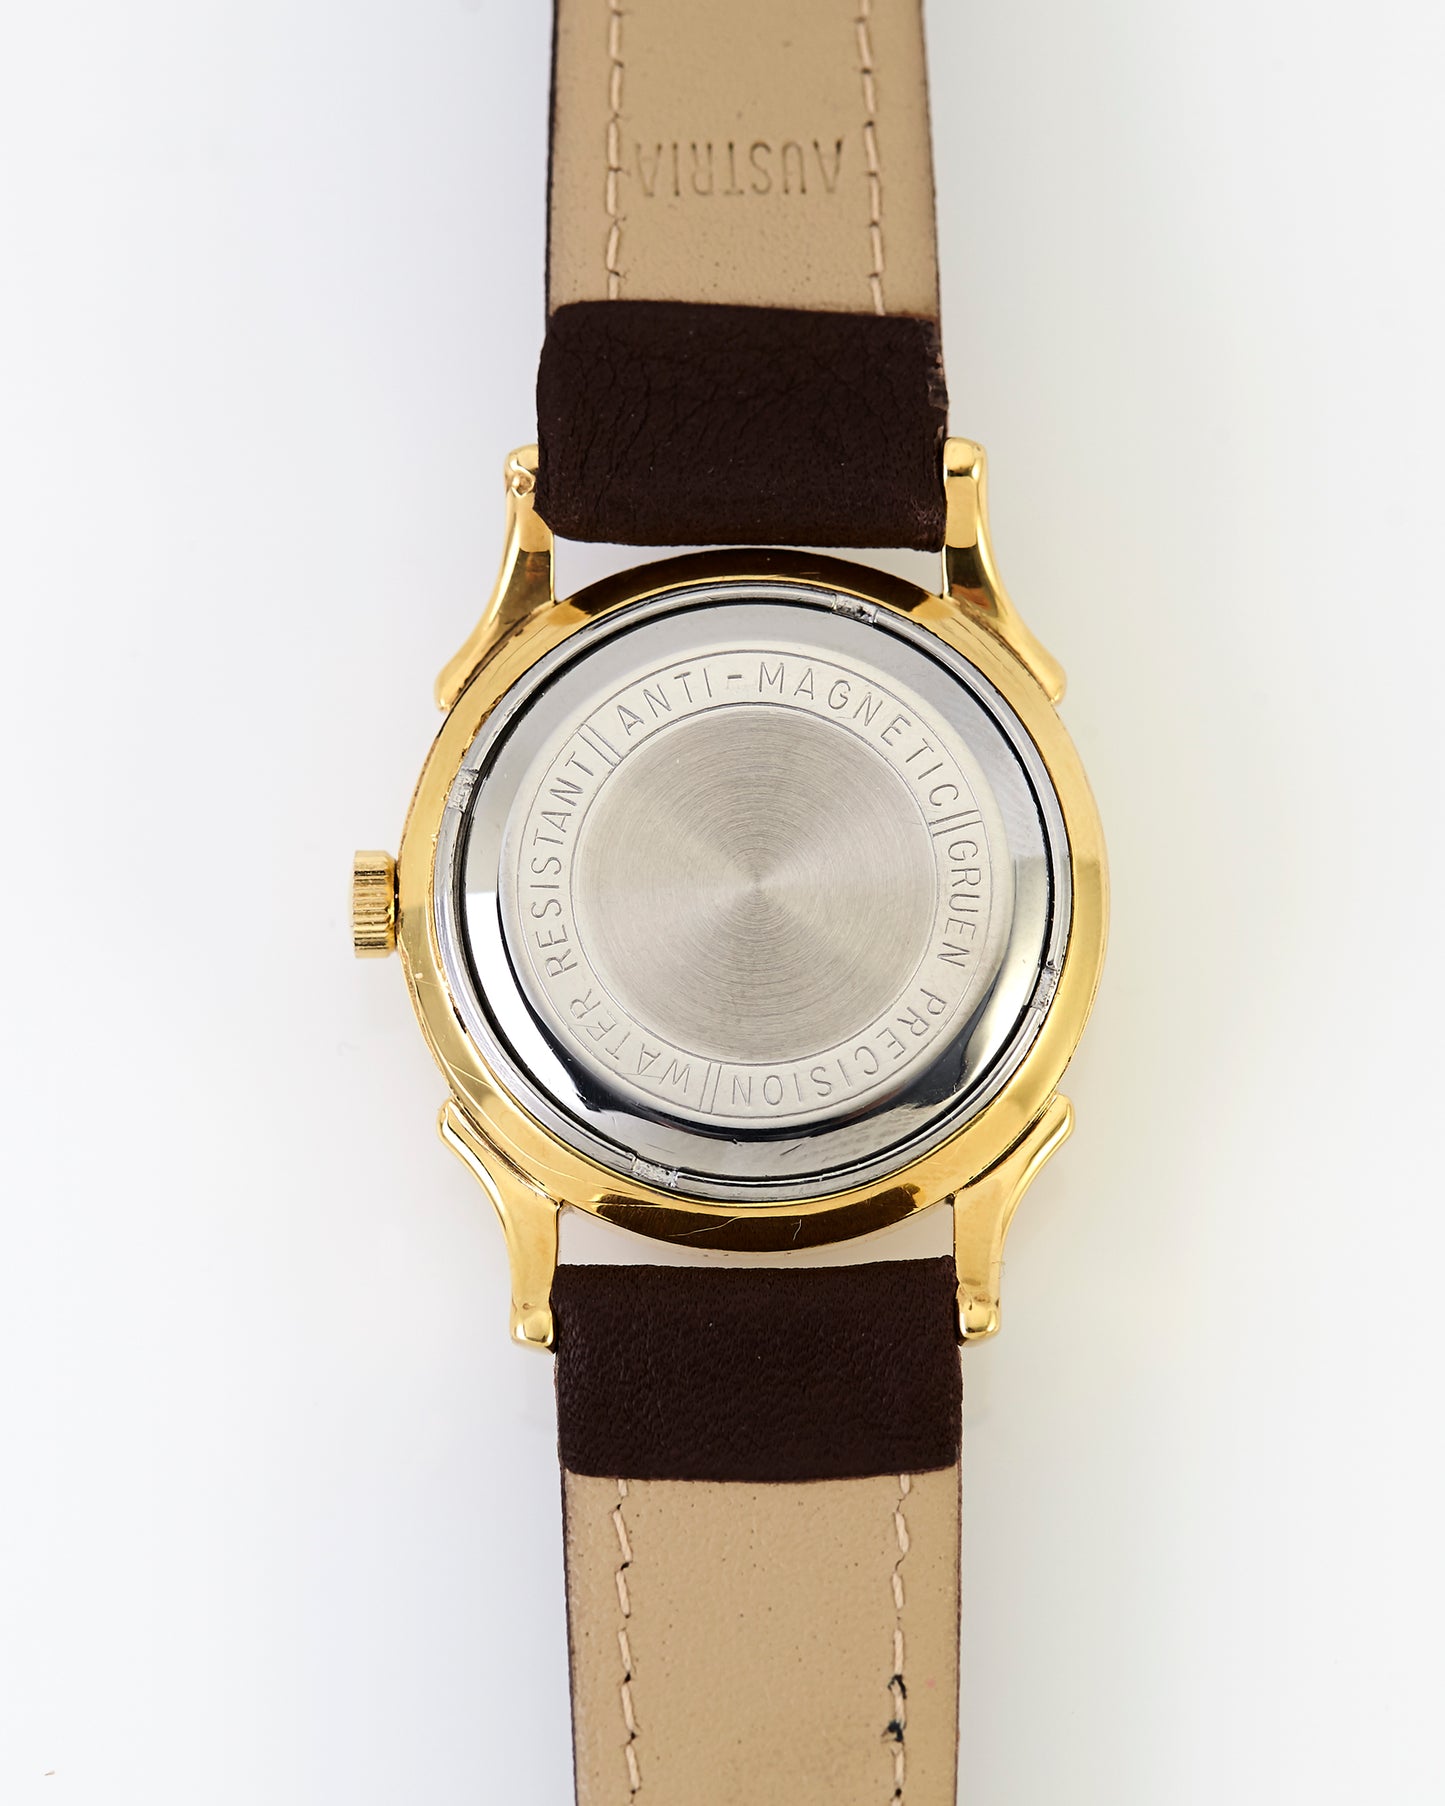 Gruen Manual Wind Vintage Wristwatch